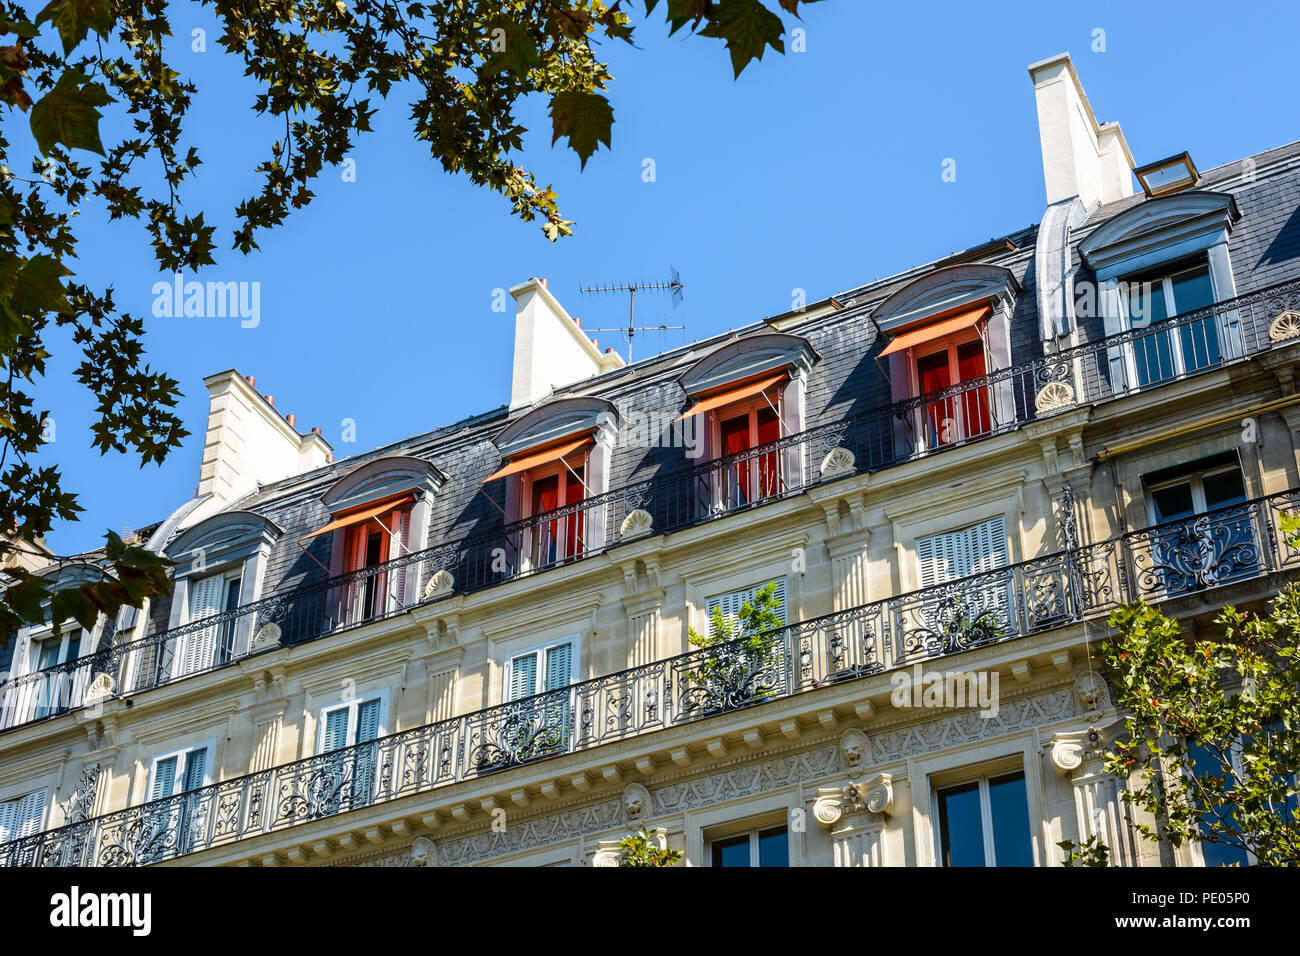 Blick von unten auf der Straße von einem typischen Pariser, opulent - Gebäude von Haussmann-gebäude Stil mit geschliffenen Steinen Fassade suchen, geschnitzten Ornamenten und Balkon. Stockfoto